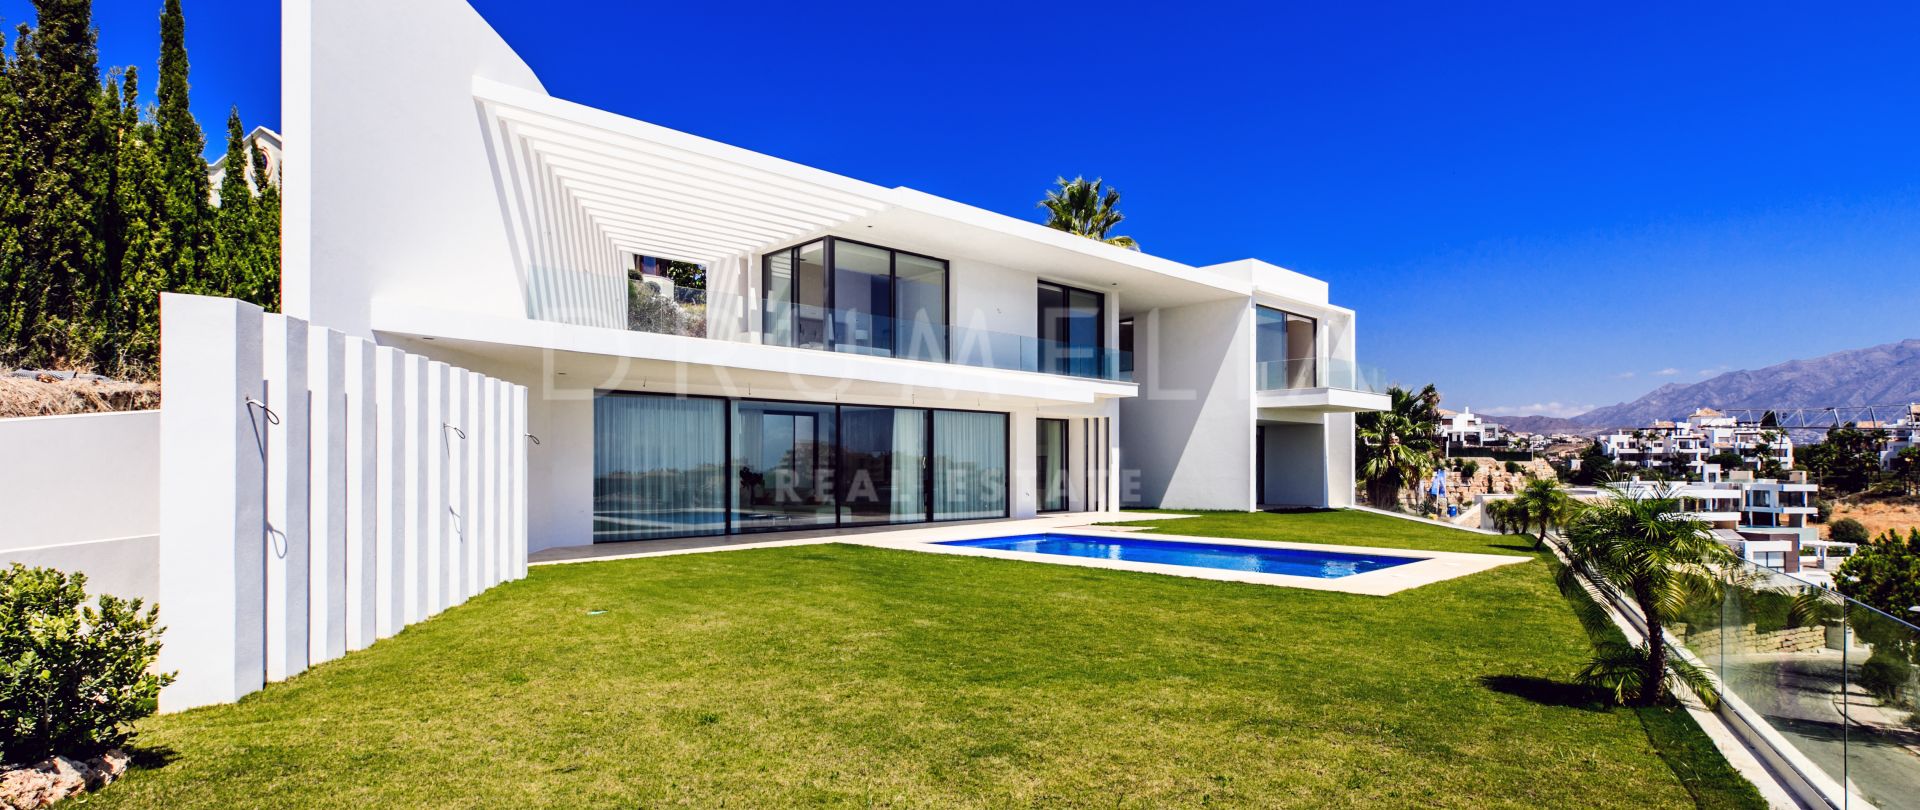 Imposante neue Luxusvilla im High-Tech-Stil in Capanes Sur